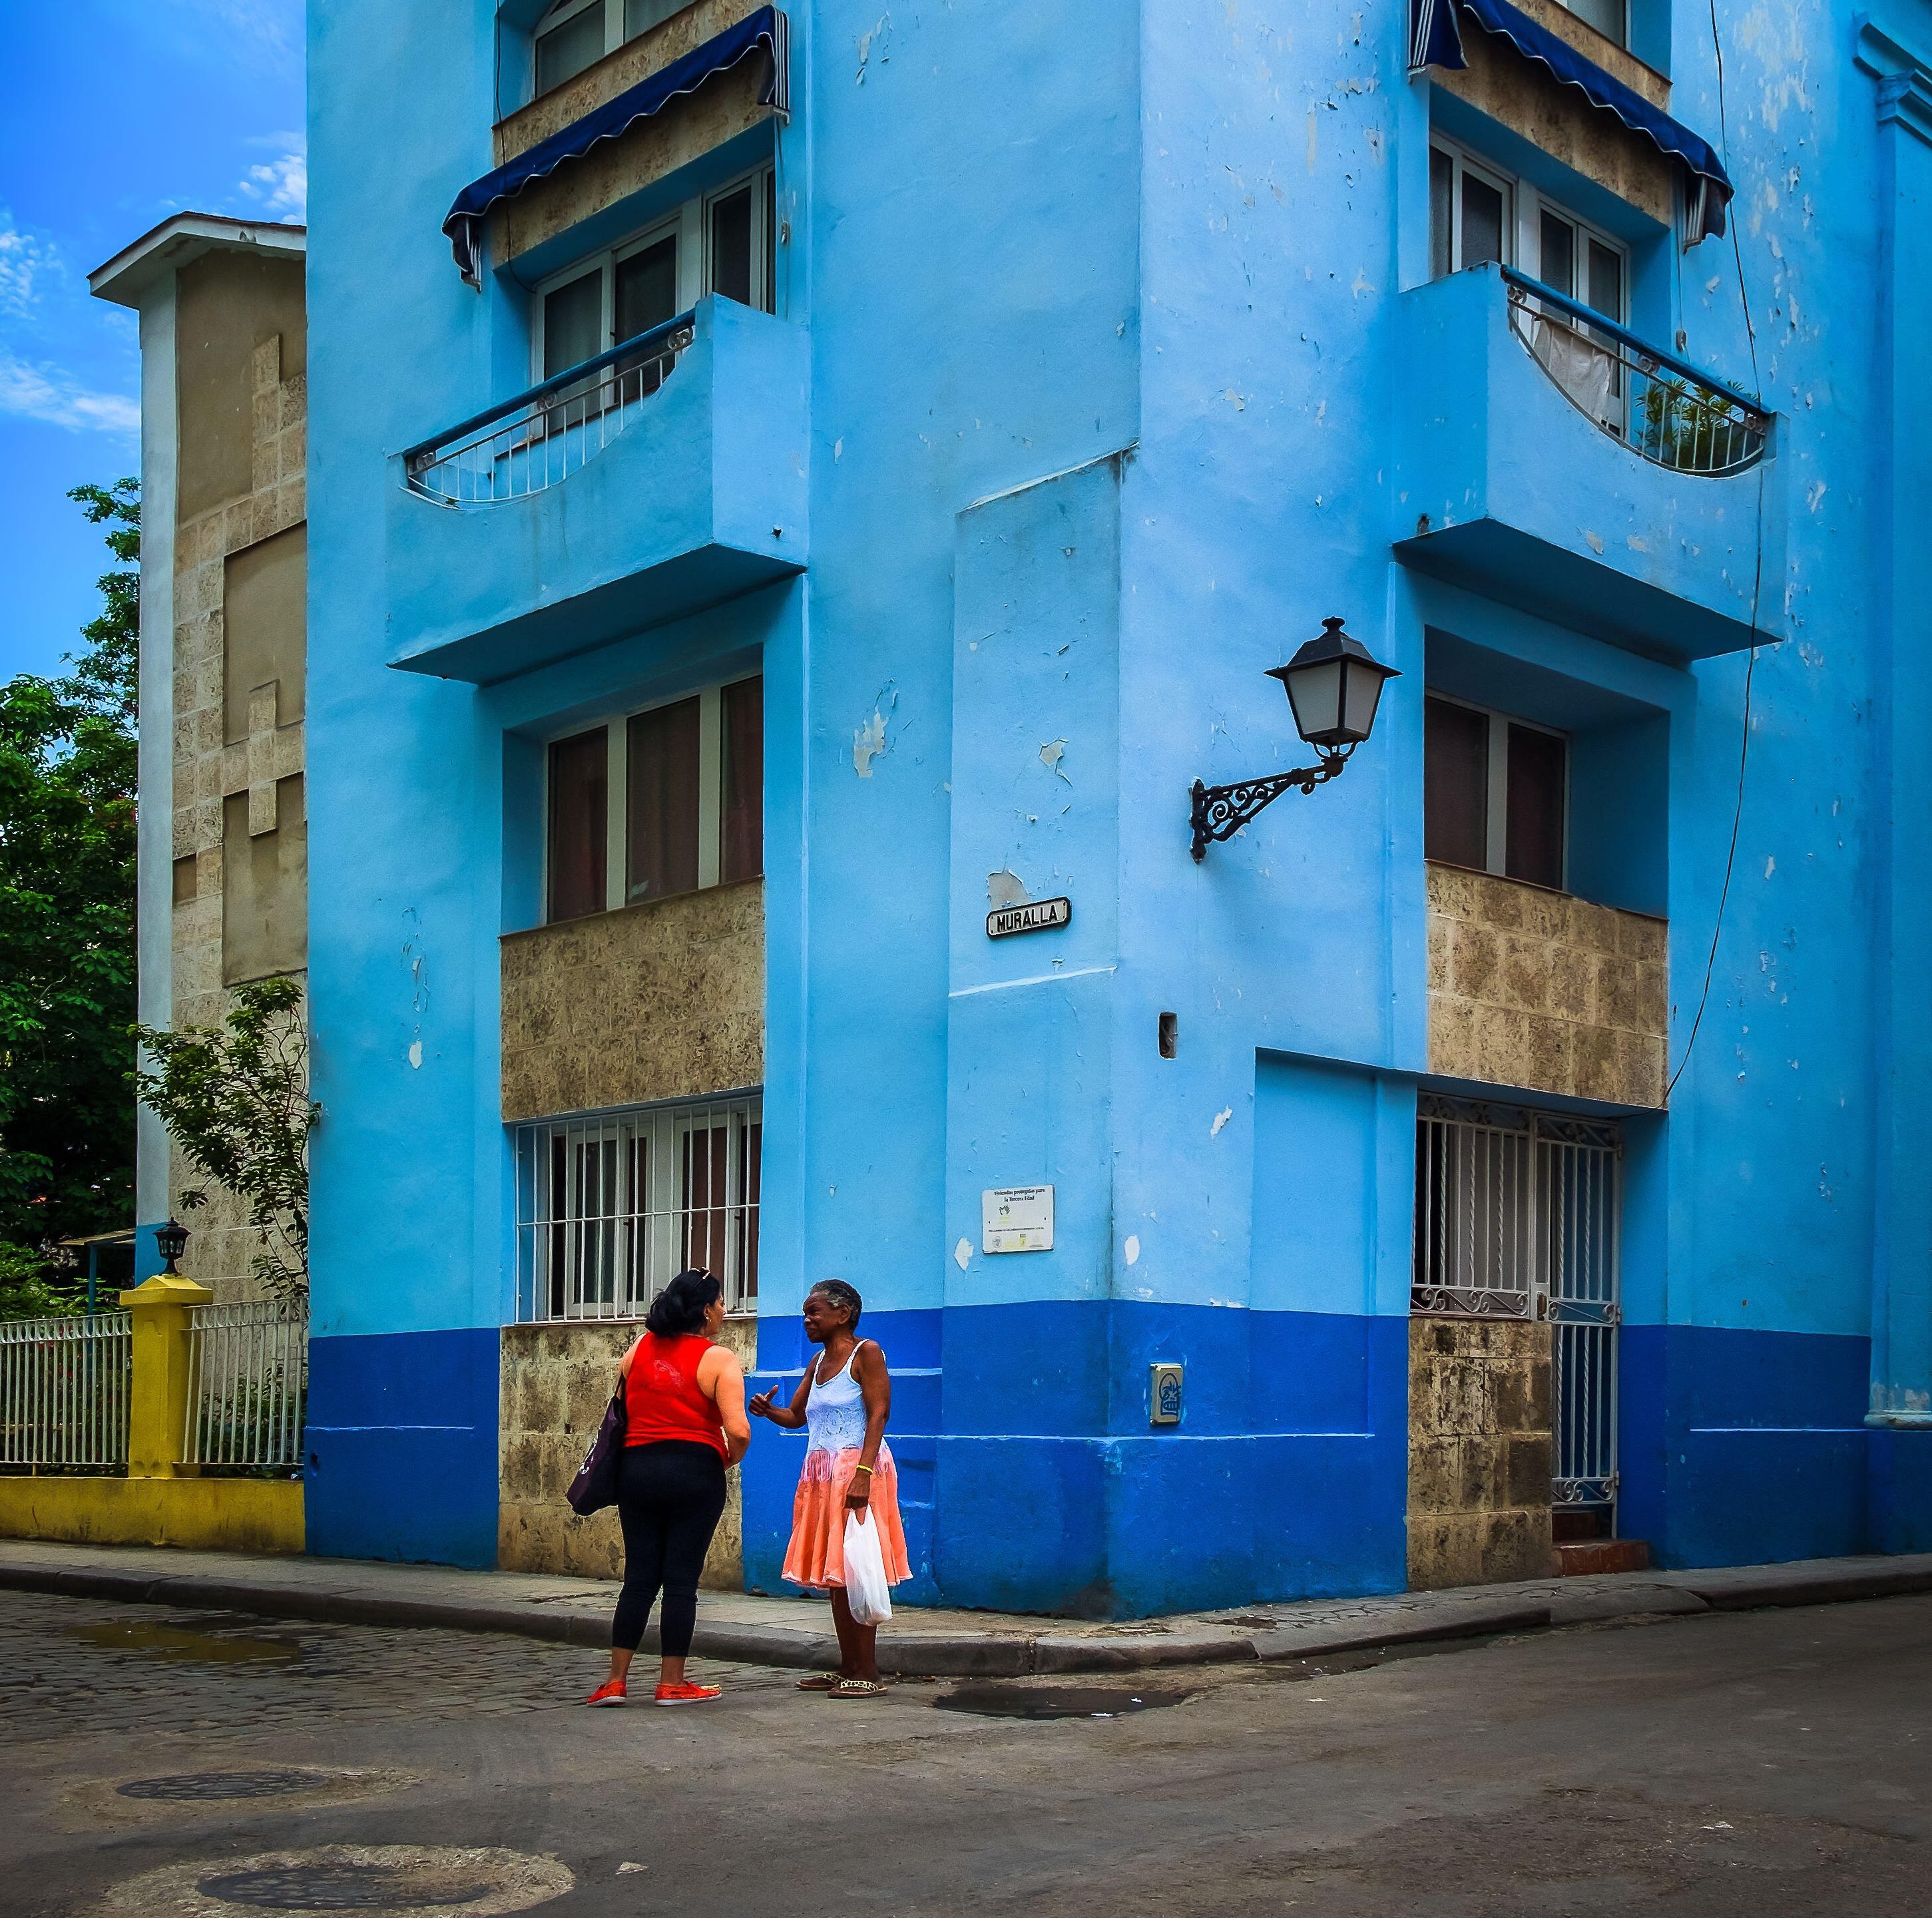 Two women chatting outside a bright blue building in Havana, Cuba.